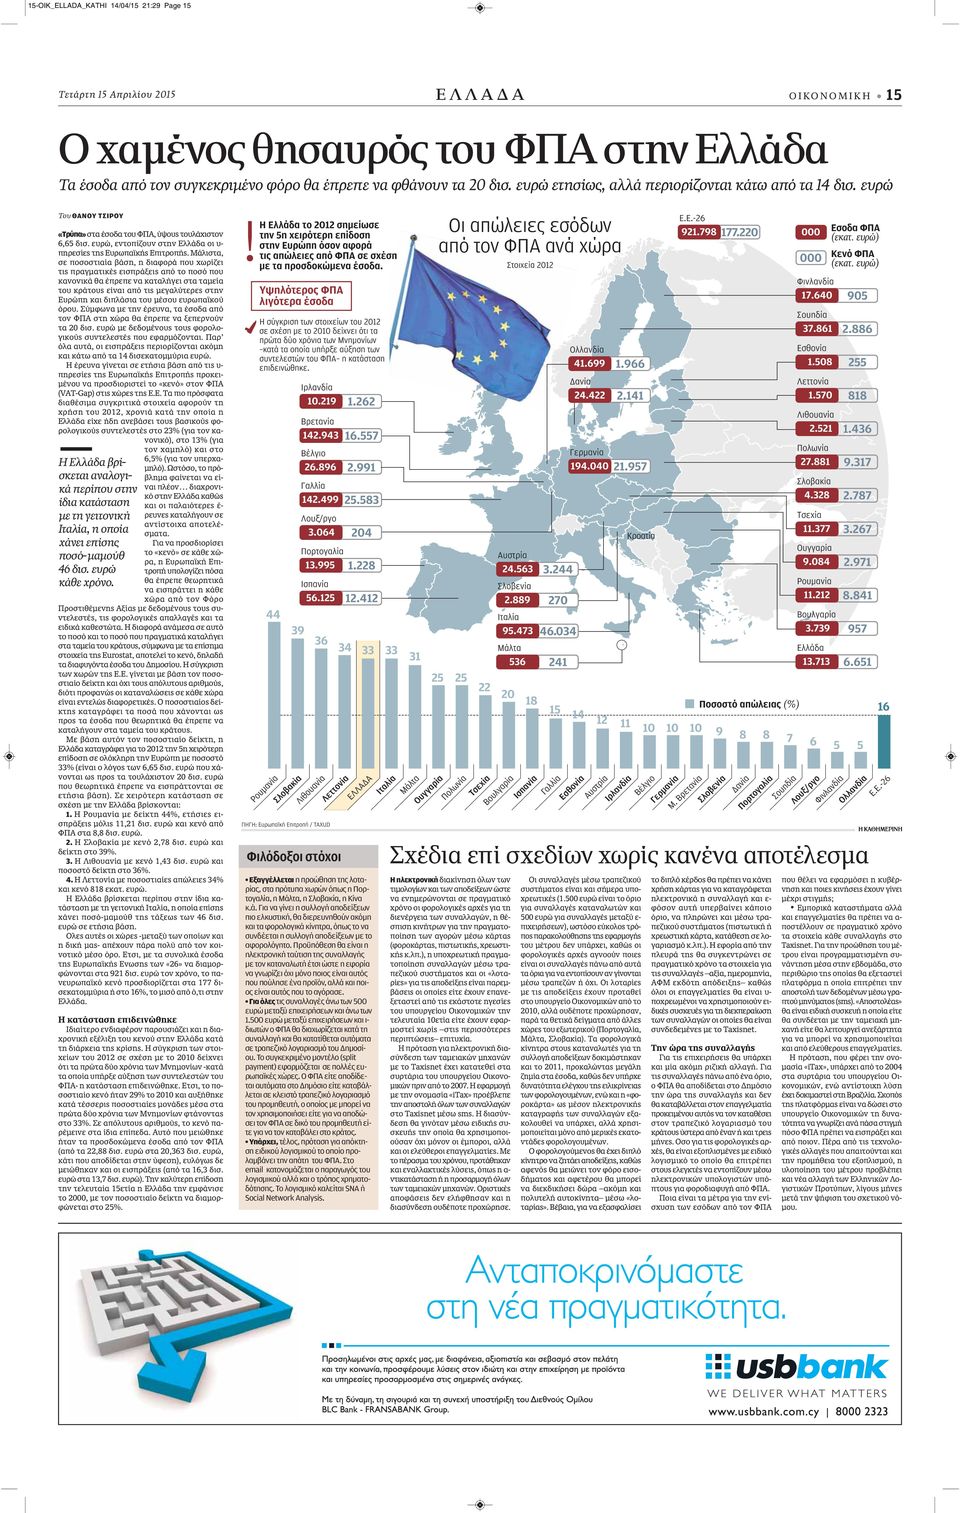 ευρώ κάθε χρόνο. «Τρύπα» στα έσοδα του ΦΠΑ, ύψους τουλάχιστον 6,65 δισ. ευρώ, εντοπίζουν στην Ελλάδα οι υ- πηρεσίες της Ευρωπαϊκής Επιτροπής.